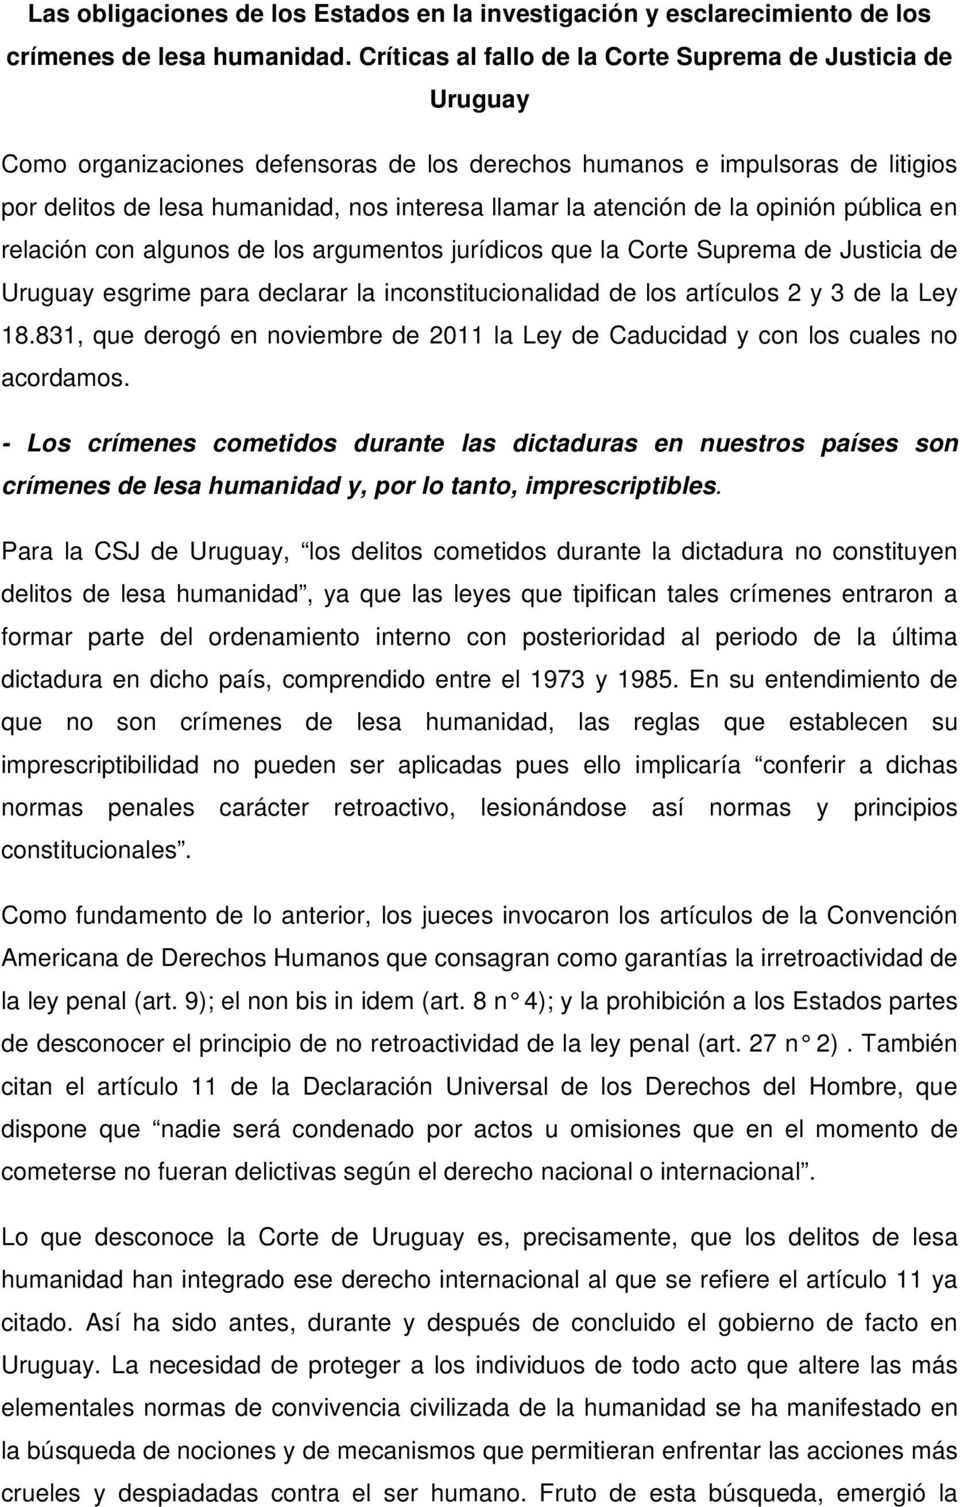 atención de la opinión pública en relación con algunos de los argumentos jurídicos que la Corte Suprema de Justicia de Uruguay esgrime para declarar la inconstitucionalidad de los artículos 2 y 3 de